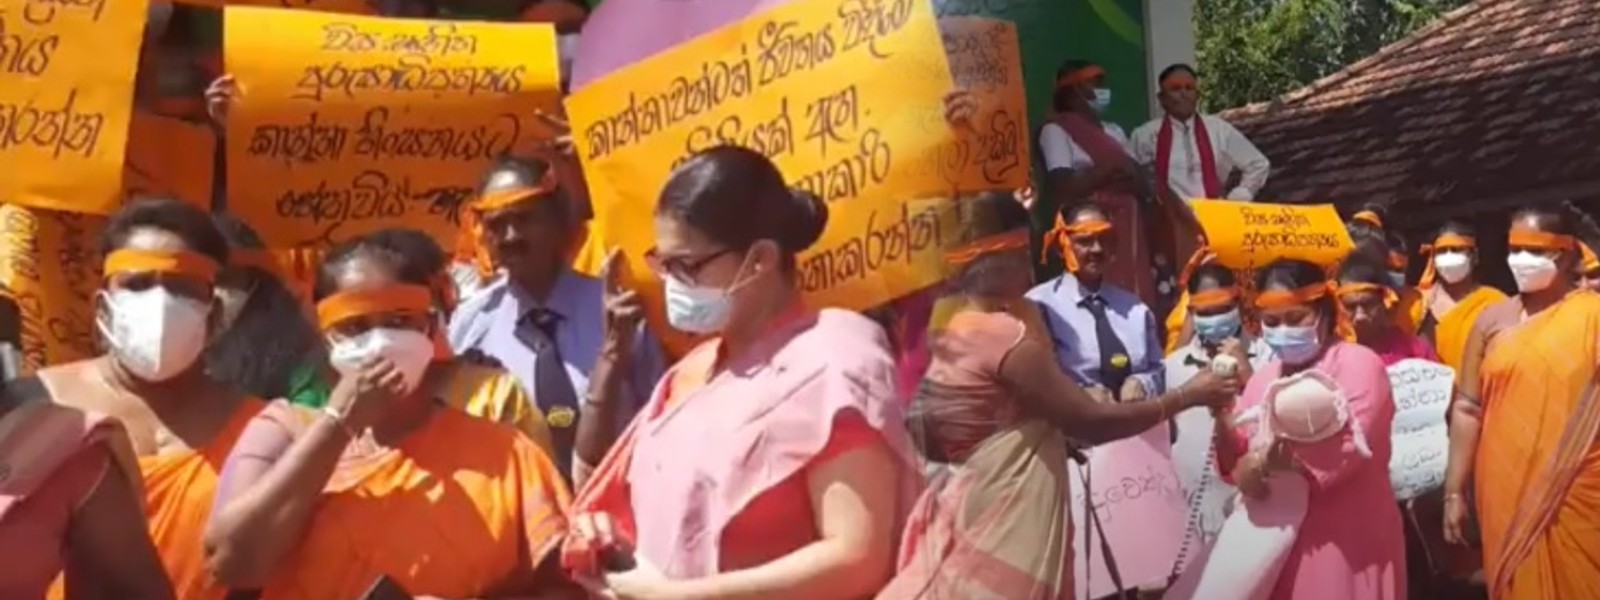 Samagi Vanitha Balawegaya launches protest over Kuttiarachchi’s defamatory comments